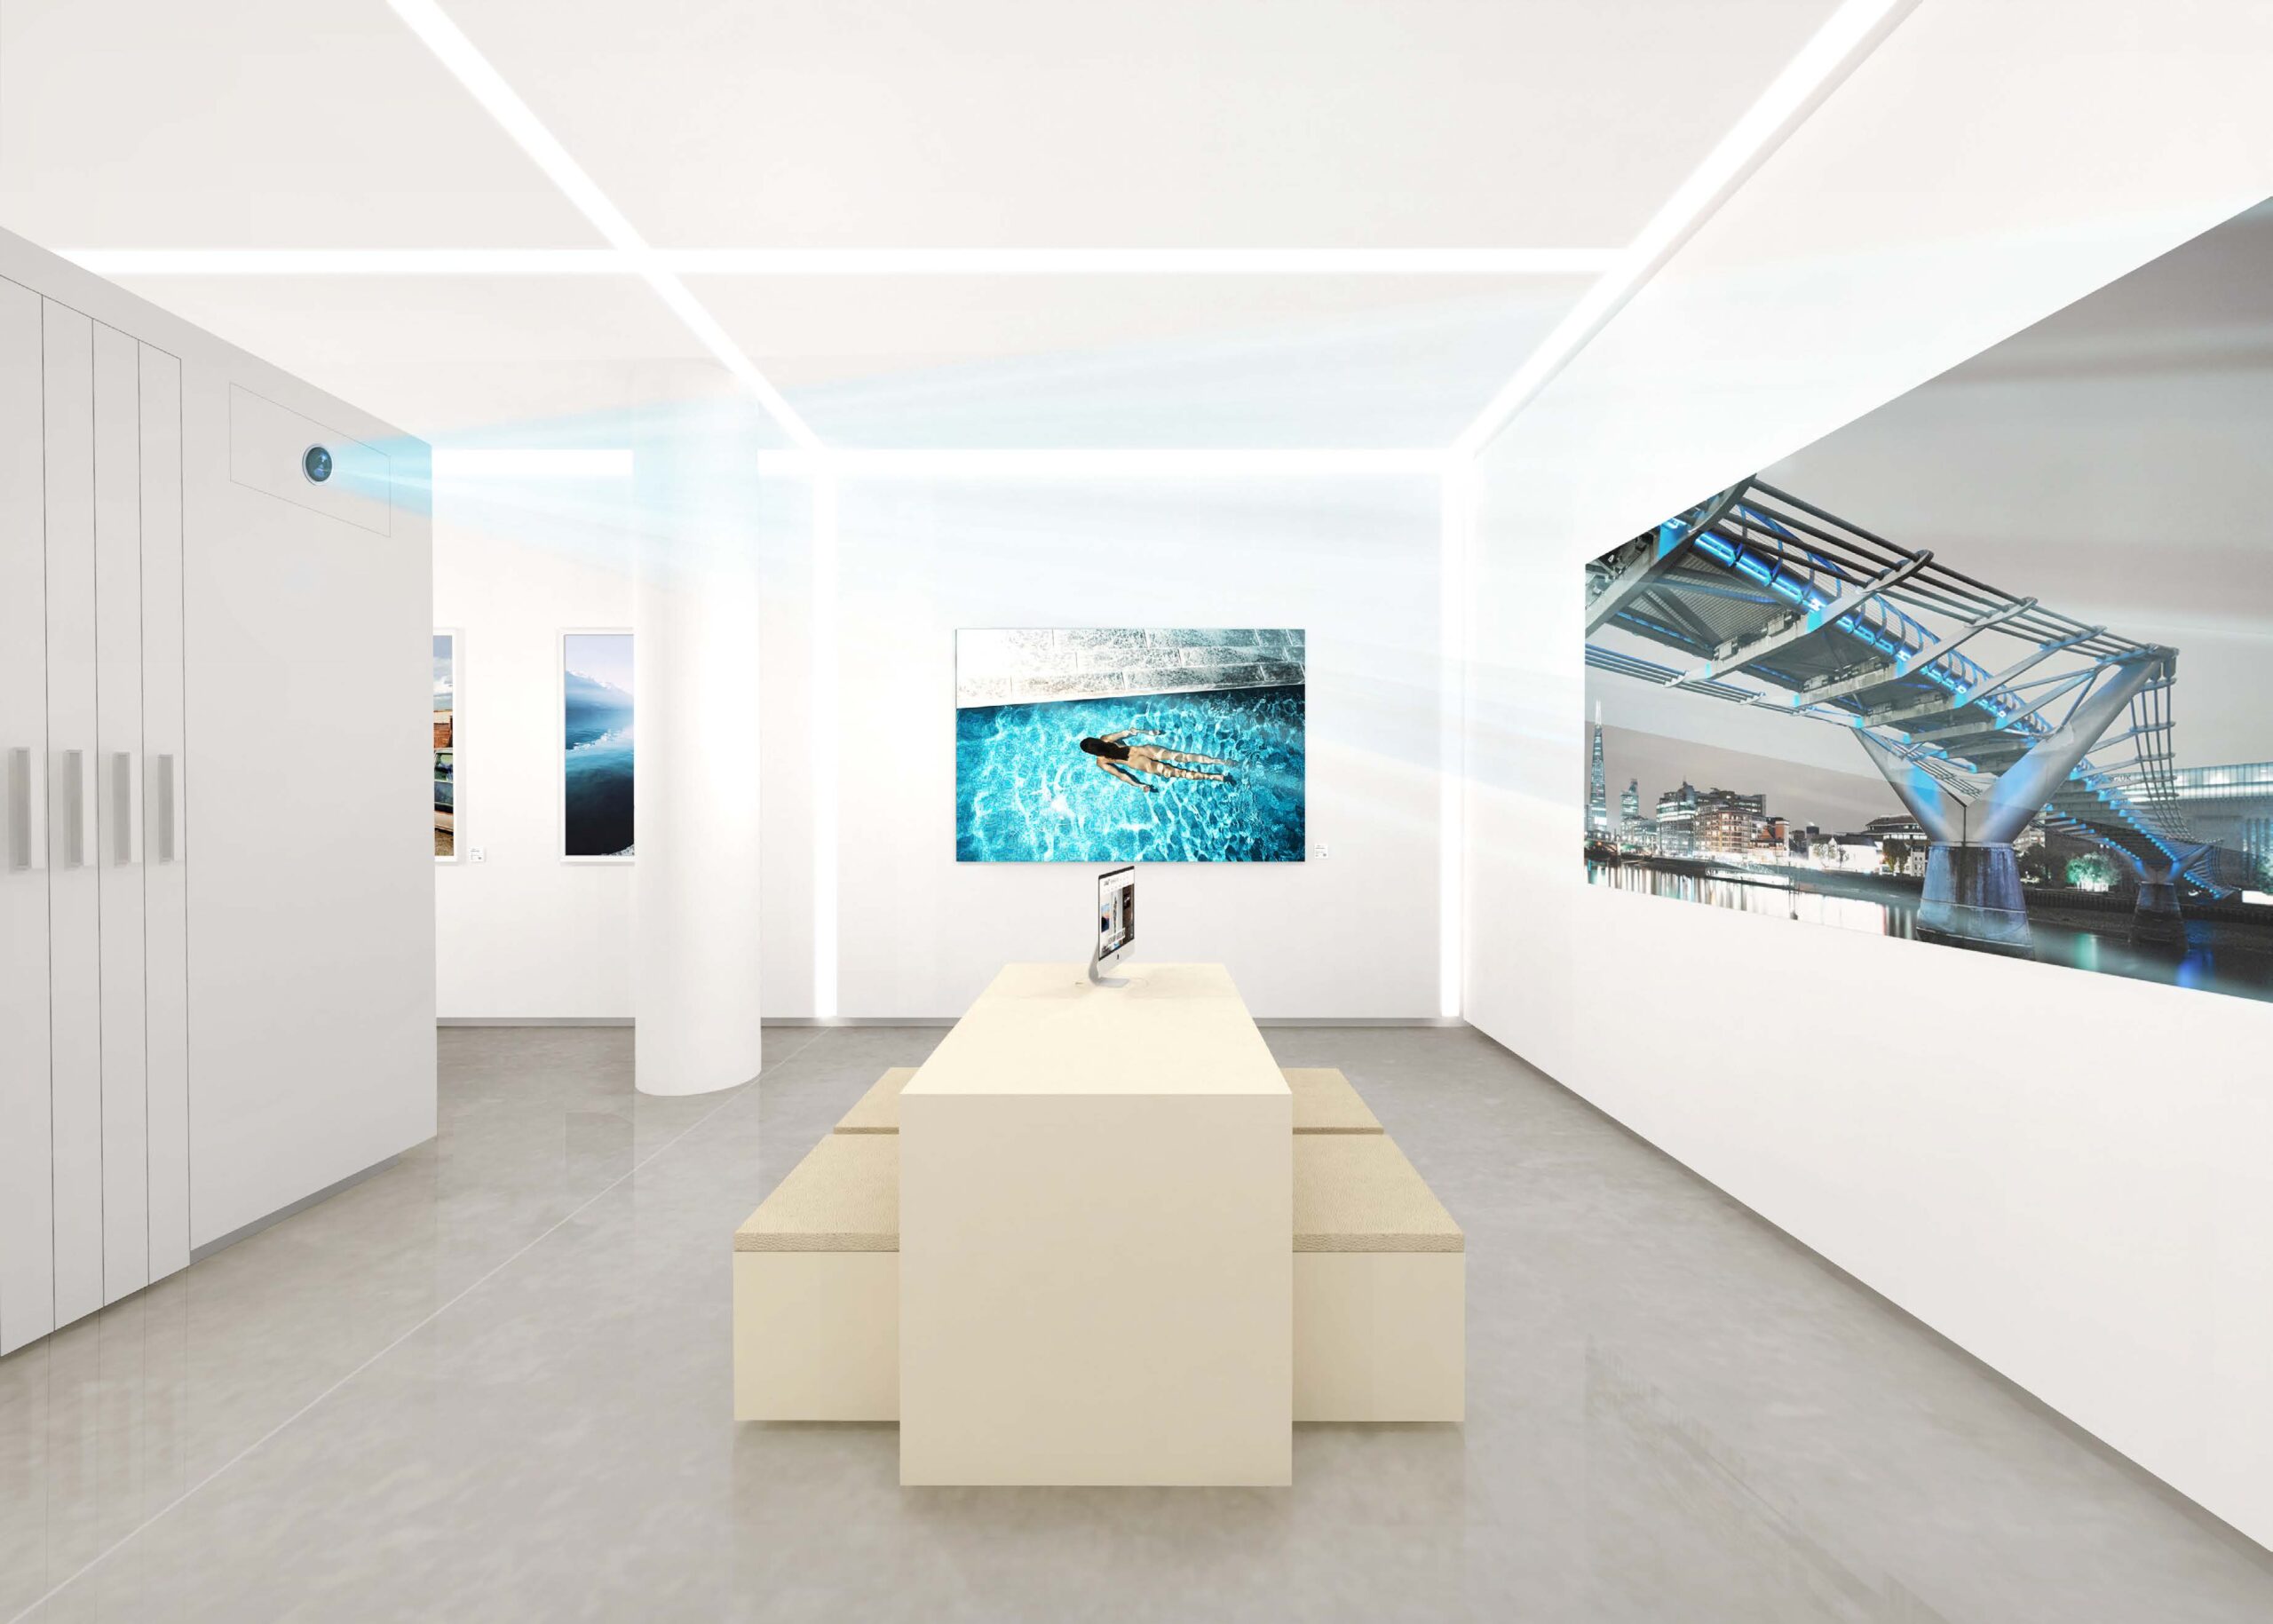 gallerie innenarchitektur für Lumas Helle moderne Räume bilden einen Rahmen für Kunstwerke